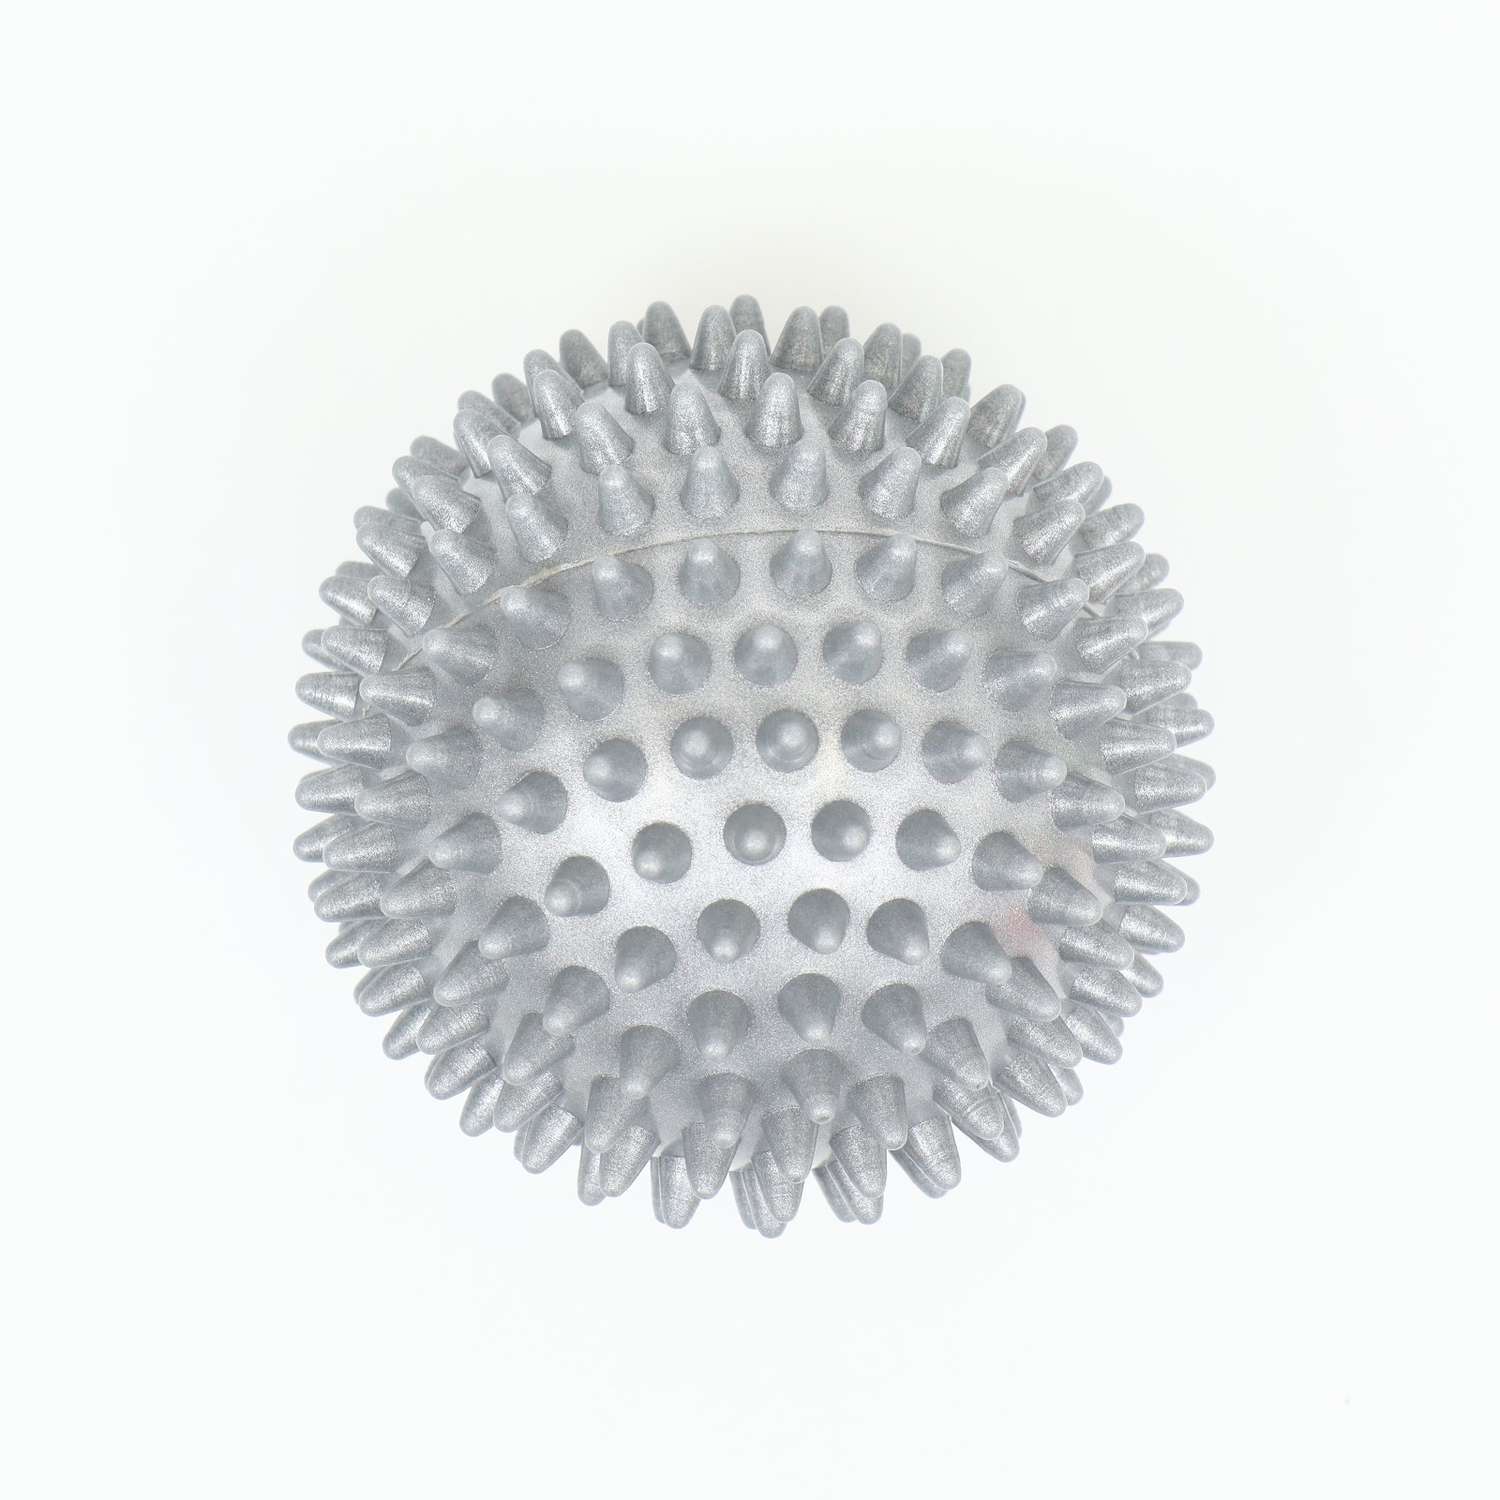 Игрушка Пижон «Мяч массажный» пластикат микс цветов 9 см - фото 2